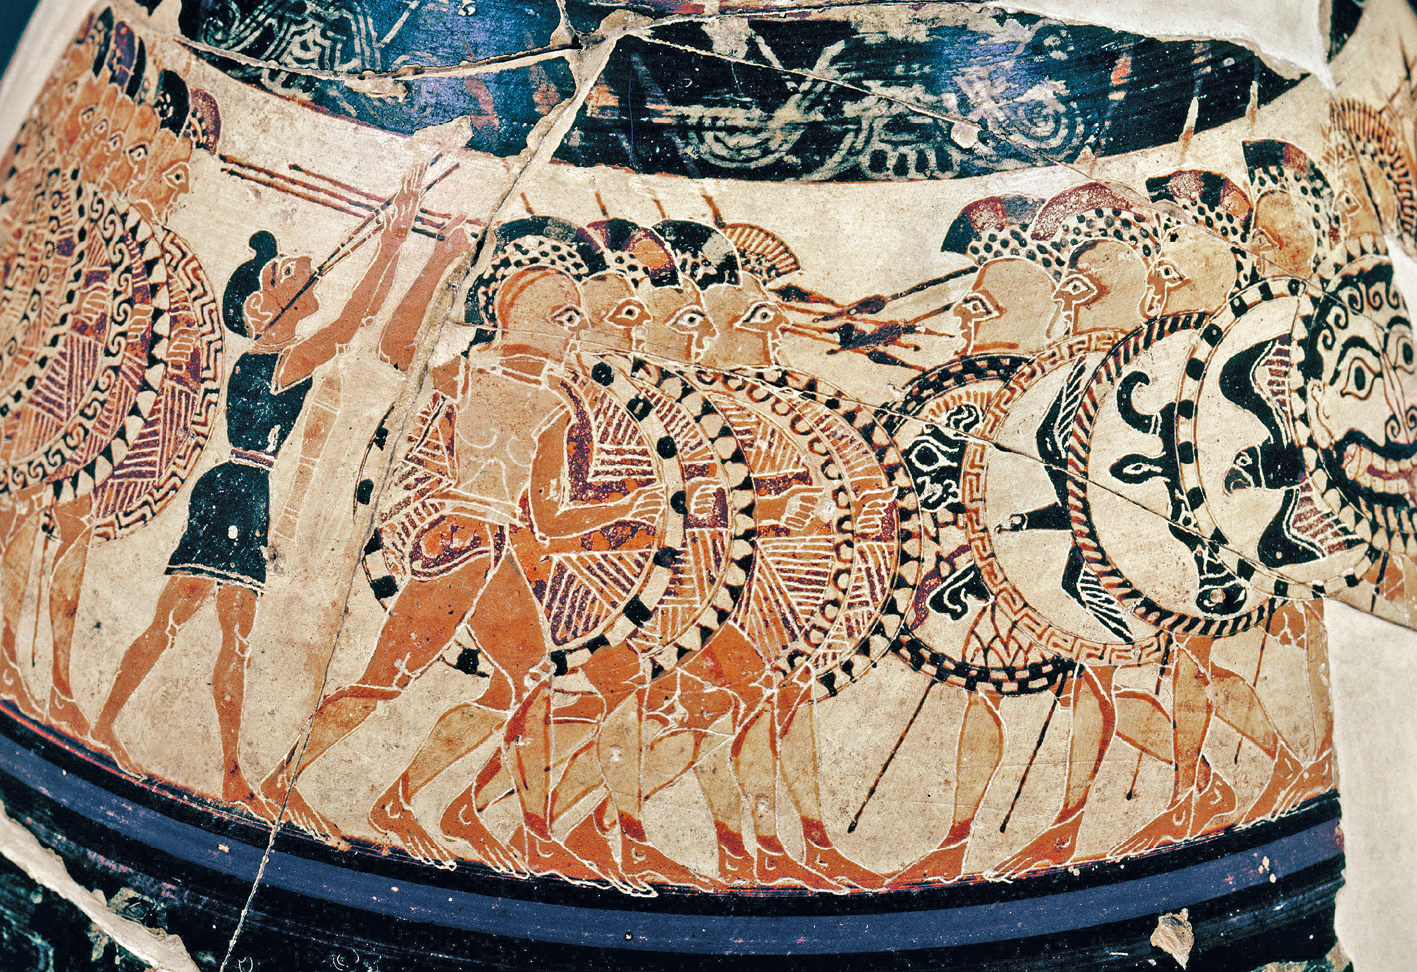 Fotografia. Parte externa de um vaso com pintura representando soldados com escudos e flechas se enfrentando. A superfície tem algumas rachaduras.